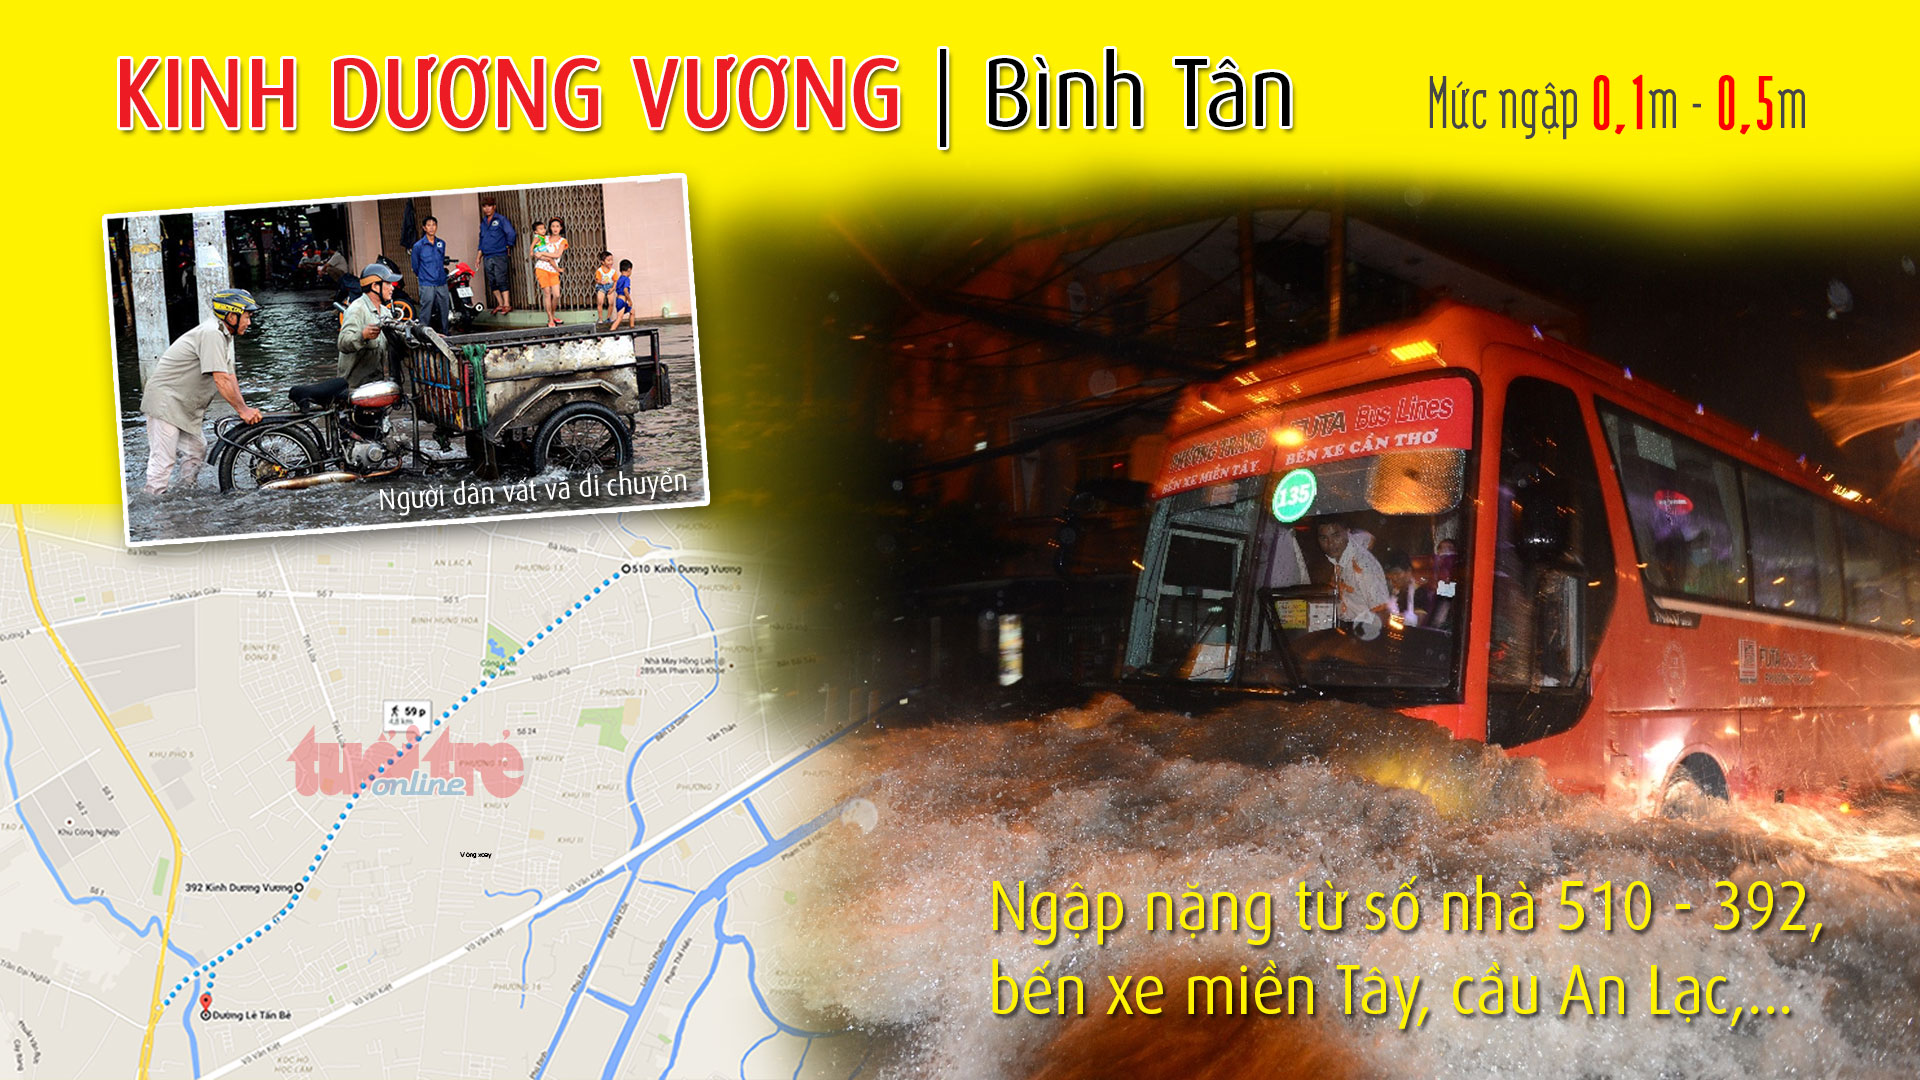 Điểm ngập ở đường Kinh Dương Vương (Bình Tân), thuộc 1 trong 66 điểm ngập ở TP.HCM trong cơn mưa chiều 15-9-2015 - Đồ họa: Việt Anh - T.Thiên